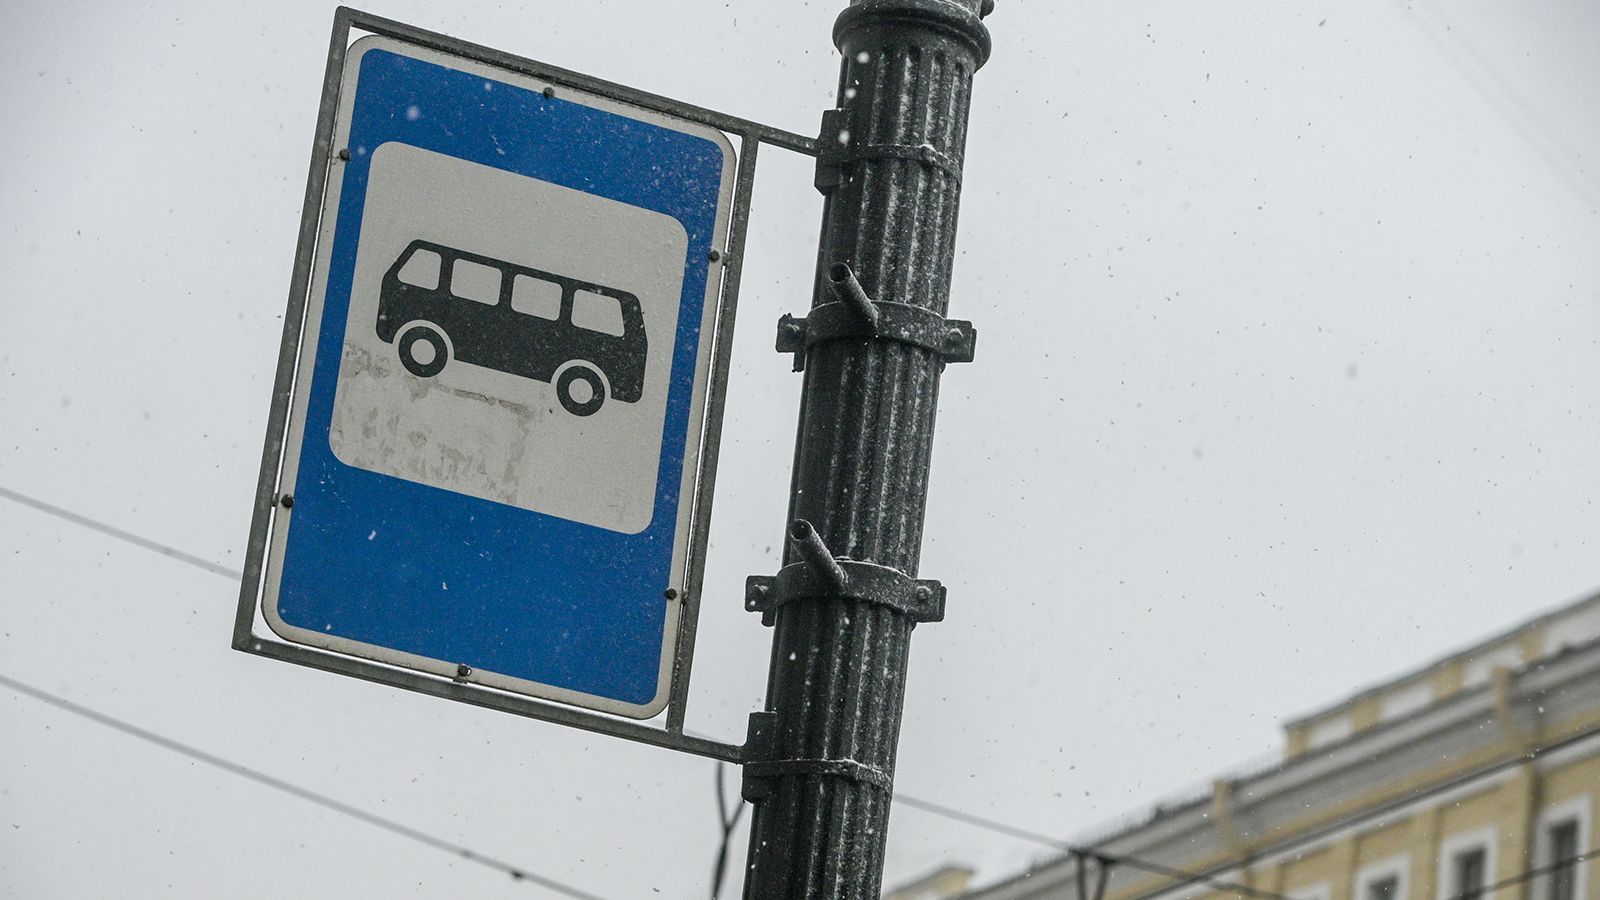 ДТП на улице Софьи Ковалевской спровоцировало пробку из автобусов и троллейбусов